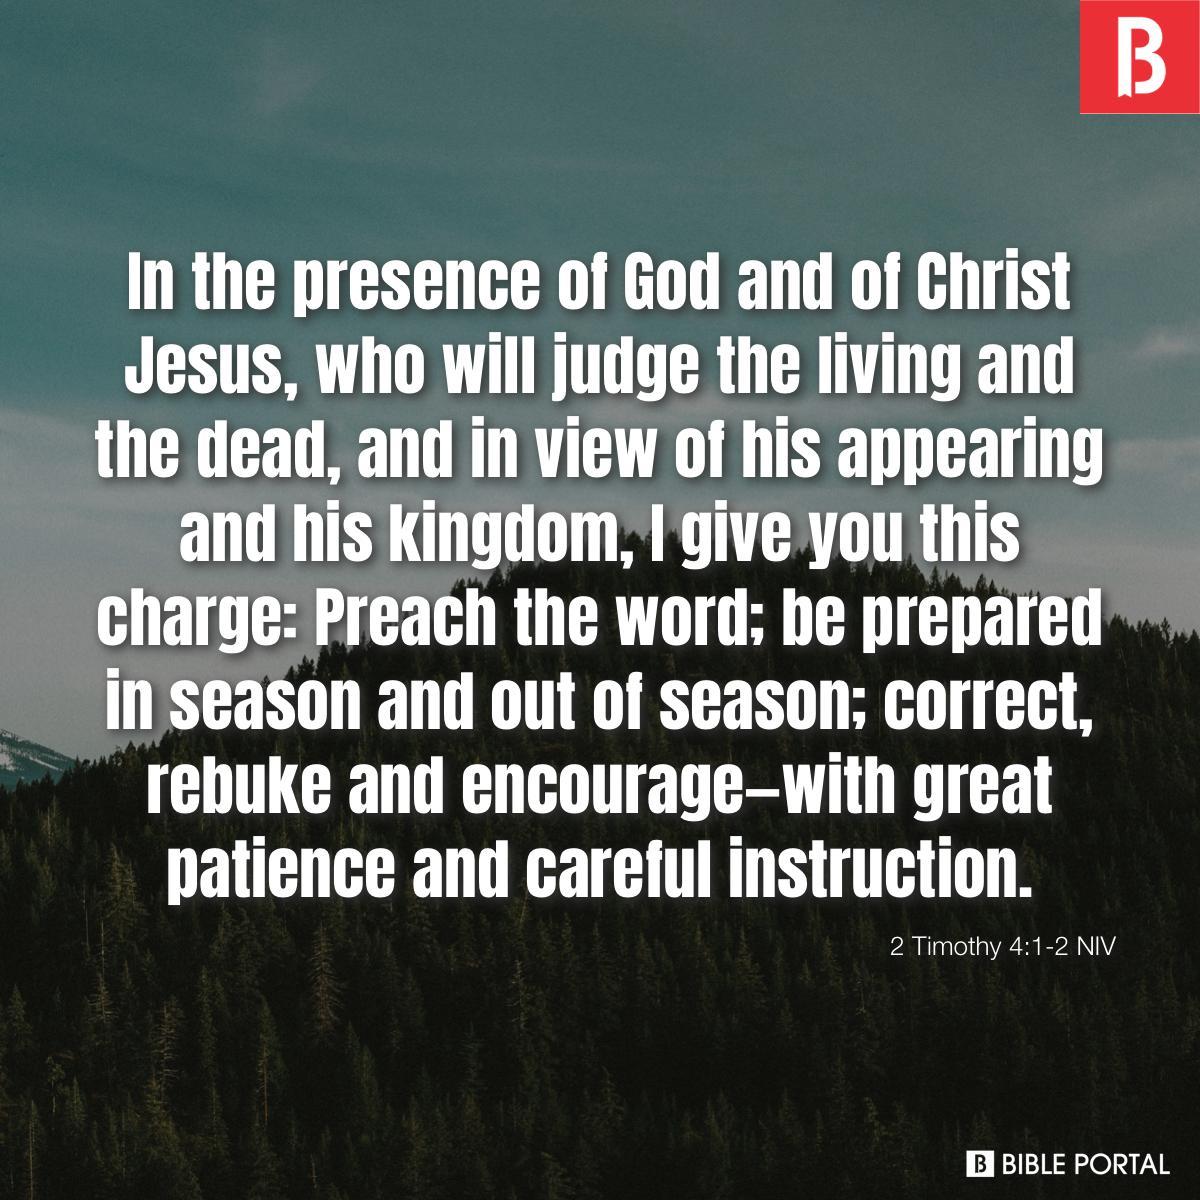 2 Timothy 4:1-2 NIV